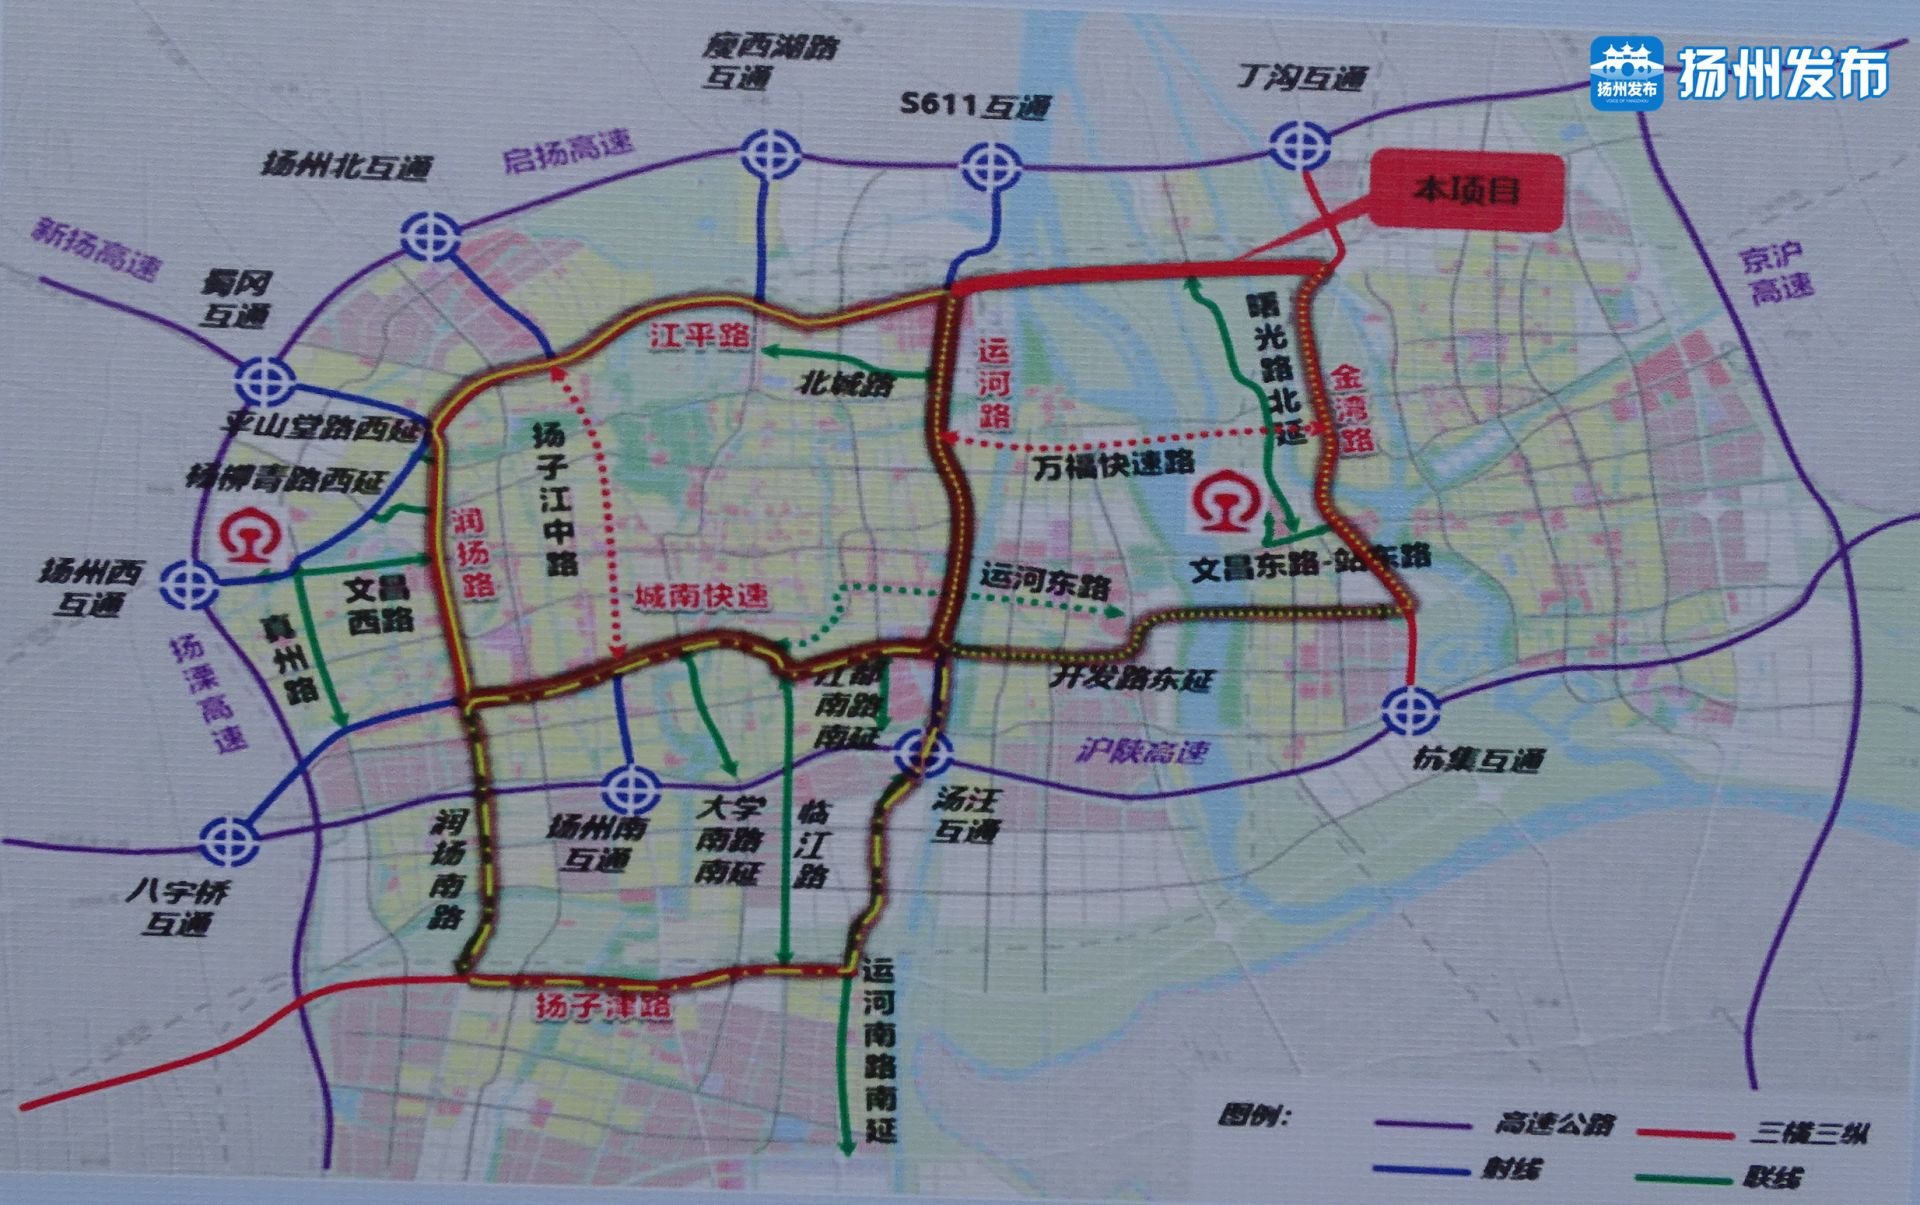 江平东路东延涉铁应急工程今开建未来快速路将直通金湾路